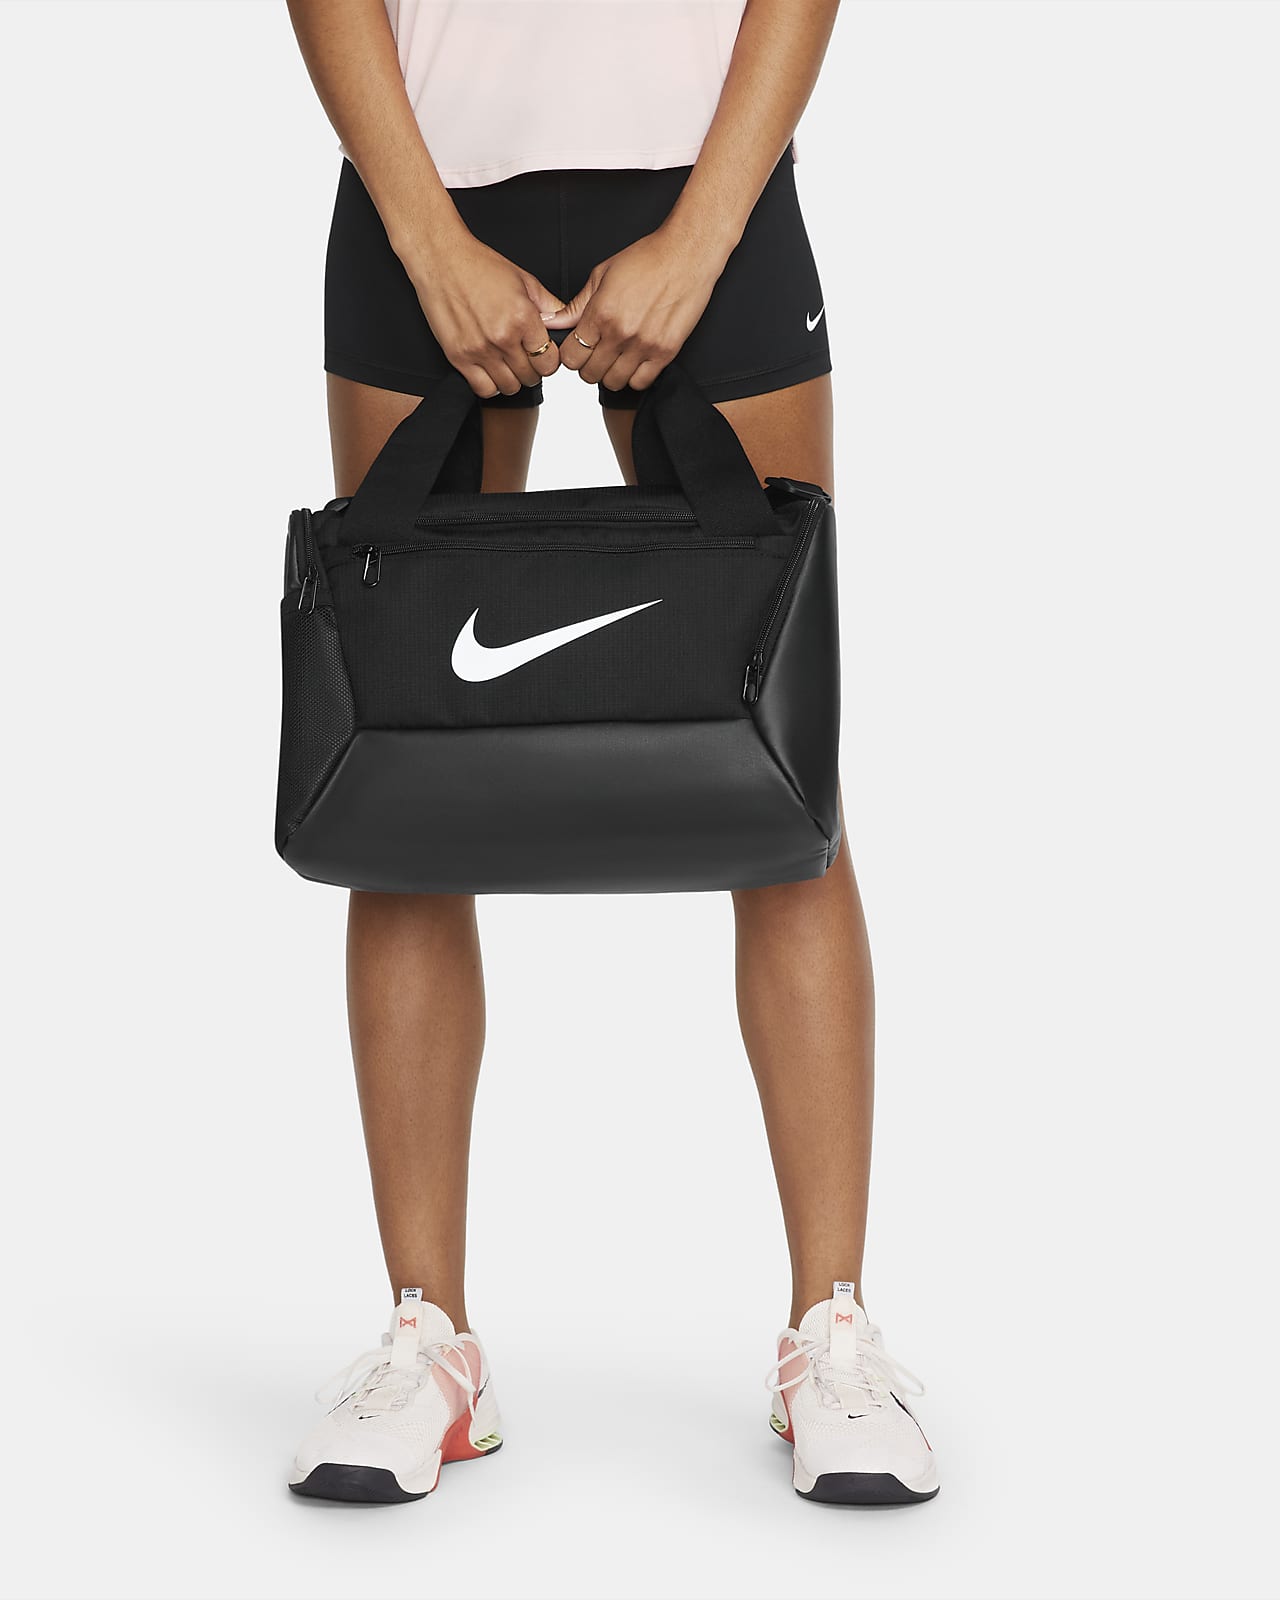 Τσάντα γυμναστηρίου για προπόνηση Nike Brasilia 9.5 (μέγεθος Extra Small, 25 L)